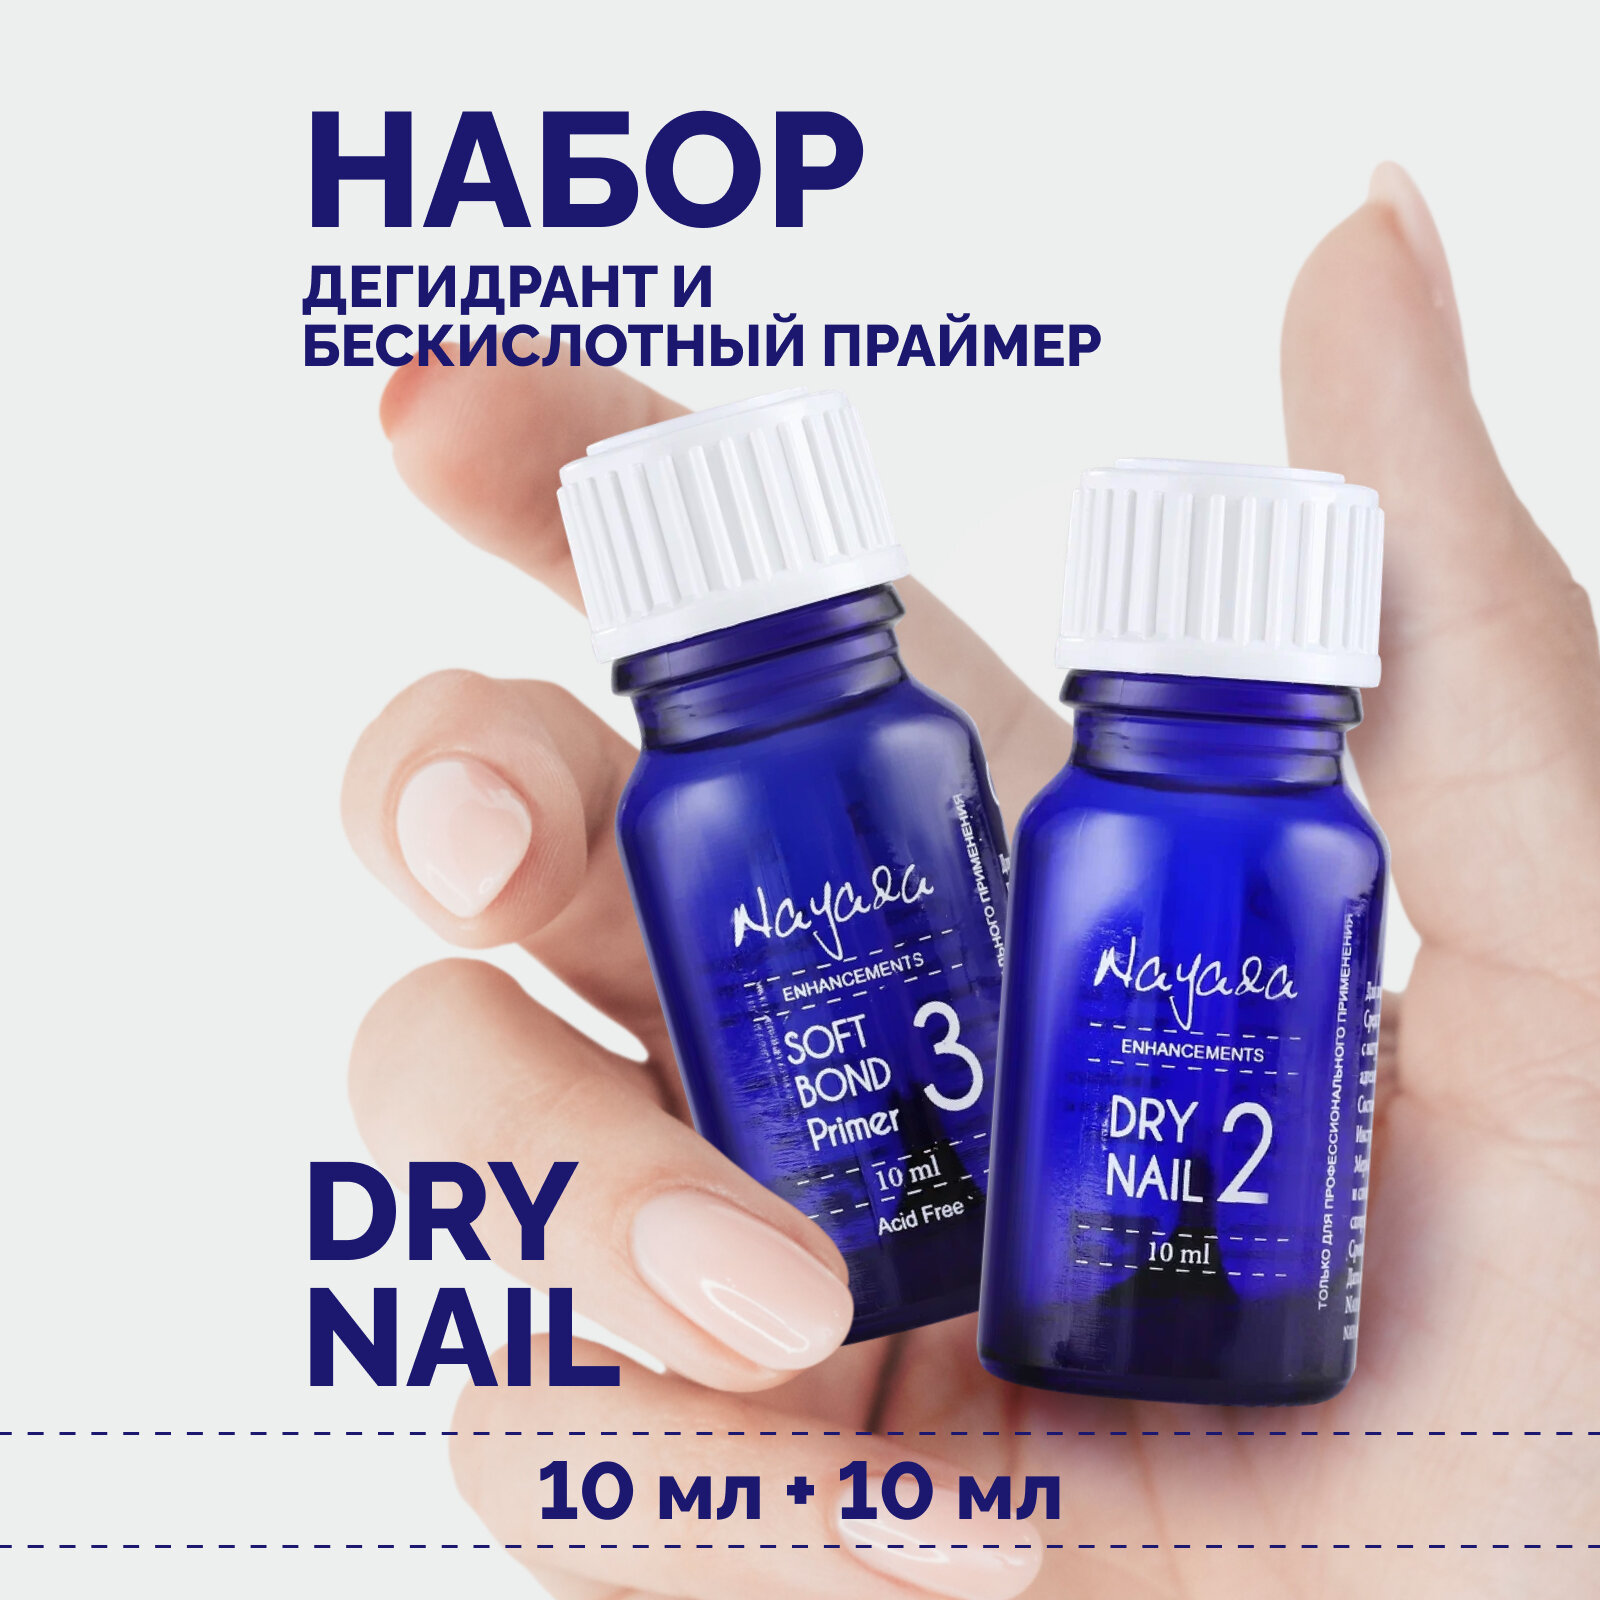 Набор для ногтей Nayada Дегидрант Dry nail, 10 мл + Праймер бескислотный Soft Bond, 10 мл